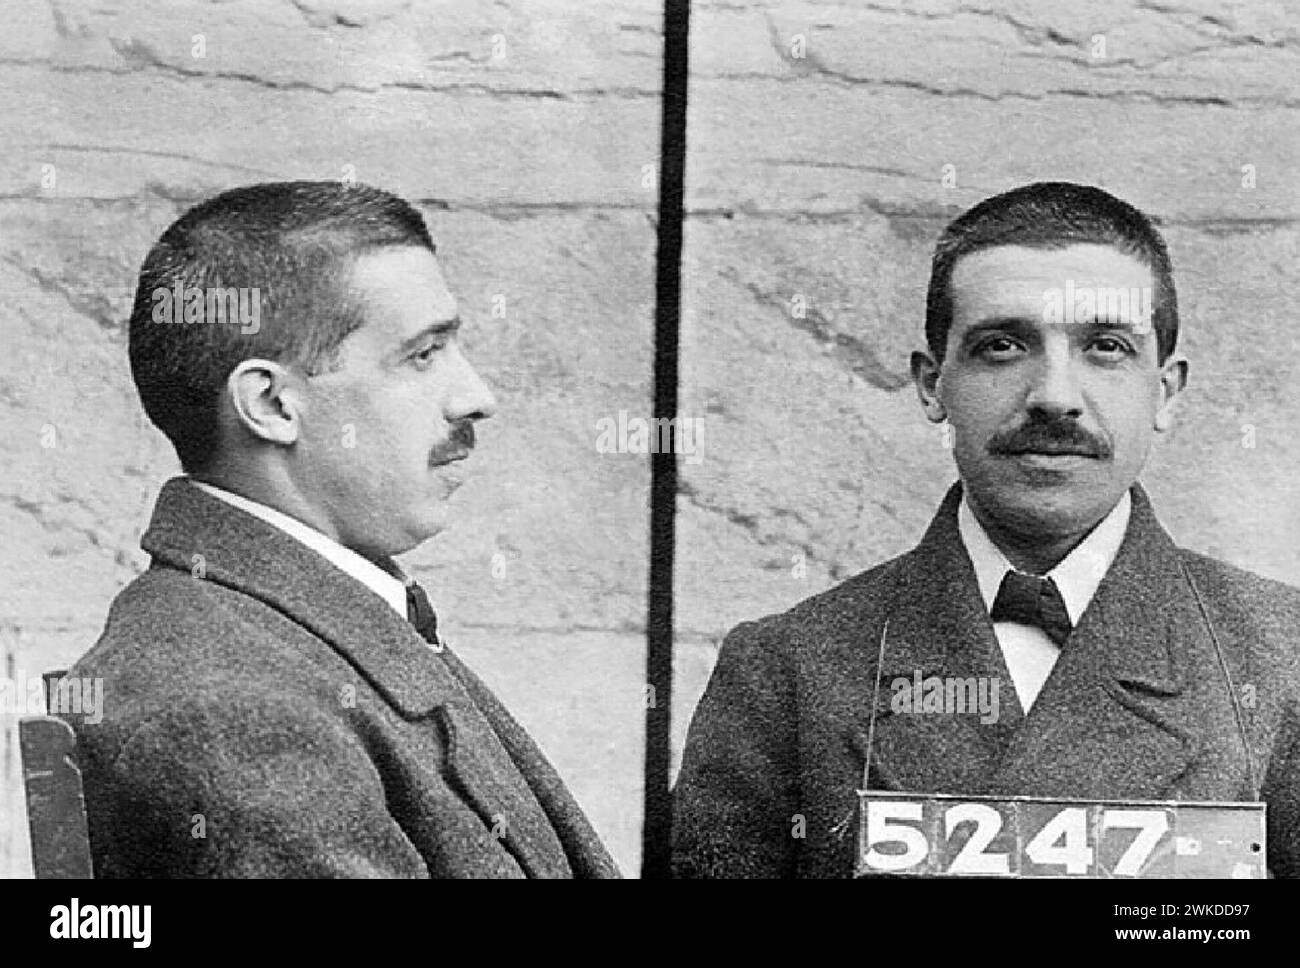 Charles Ponzi mug shot - années 1920 - Un système de Ponzi est une forme de fraude qui attire les investisseurs et verse des bénéfices à des investisseurs antérieurs avec des fonds d'investisseurs plus récents Banque D'Images